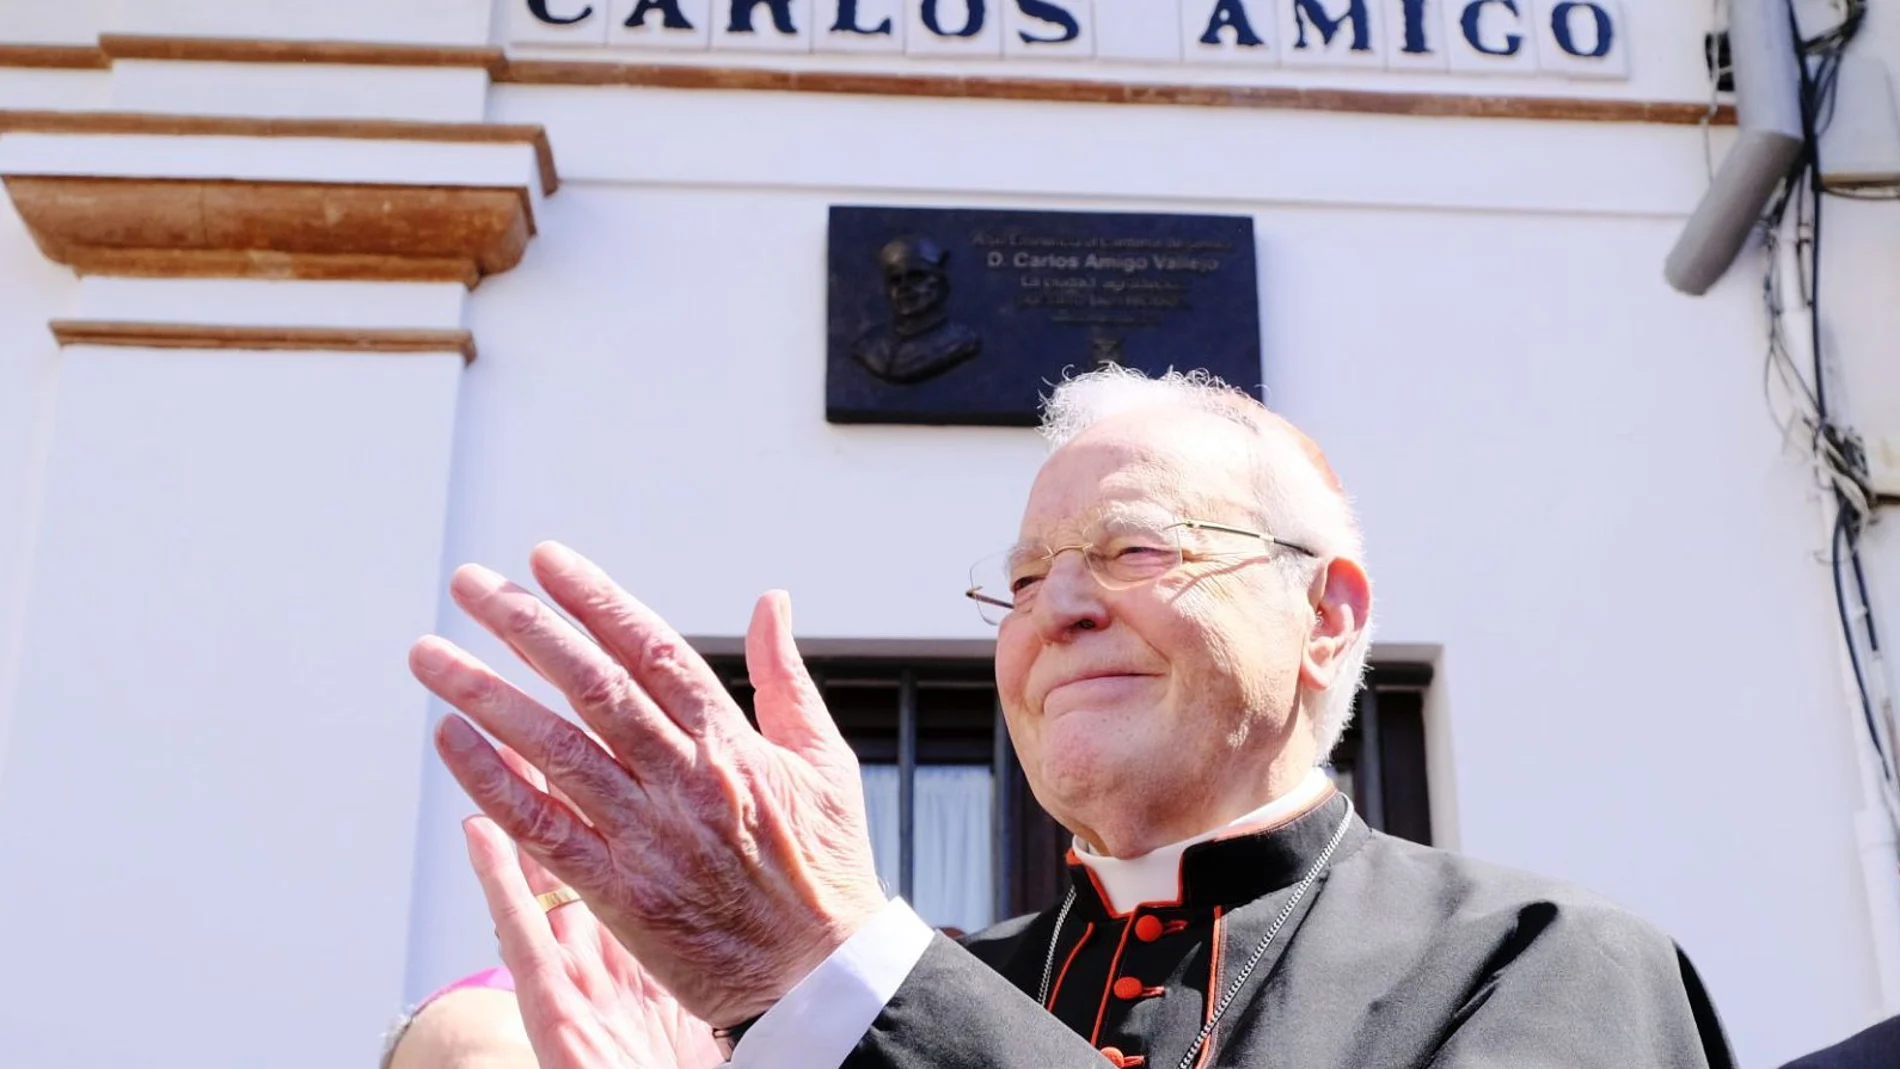 El cardenal Carlos Amigo Vallejo